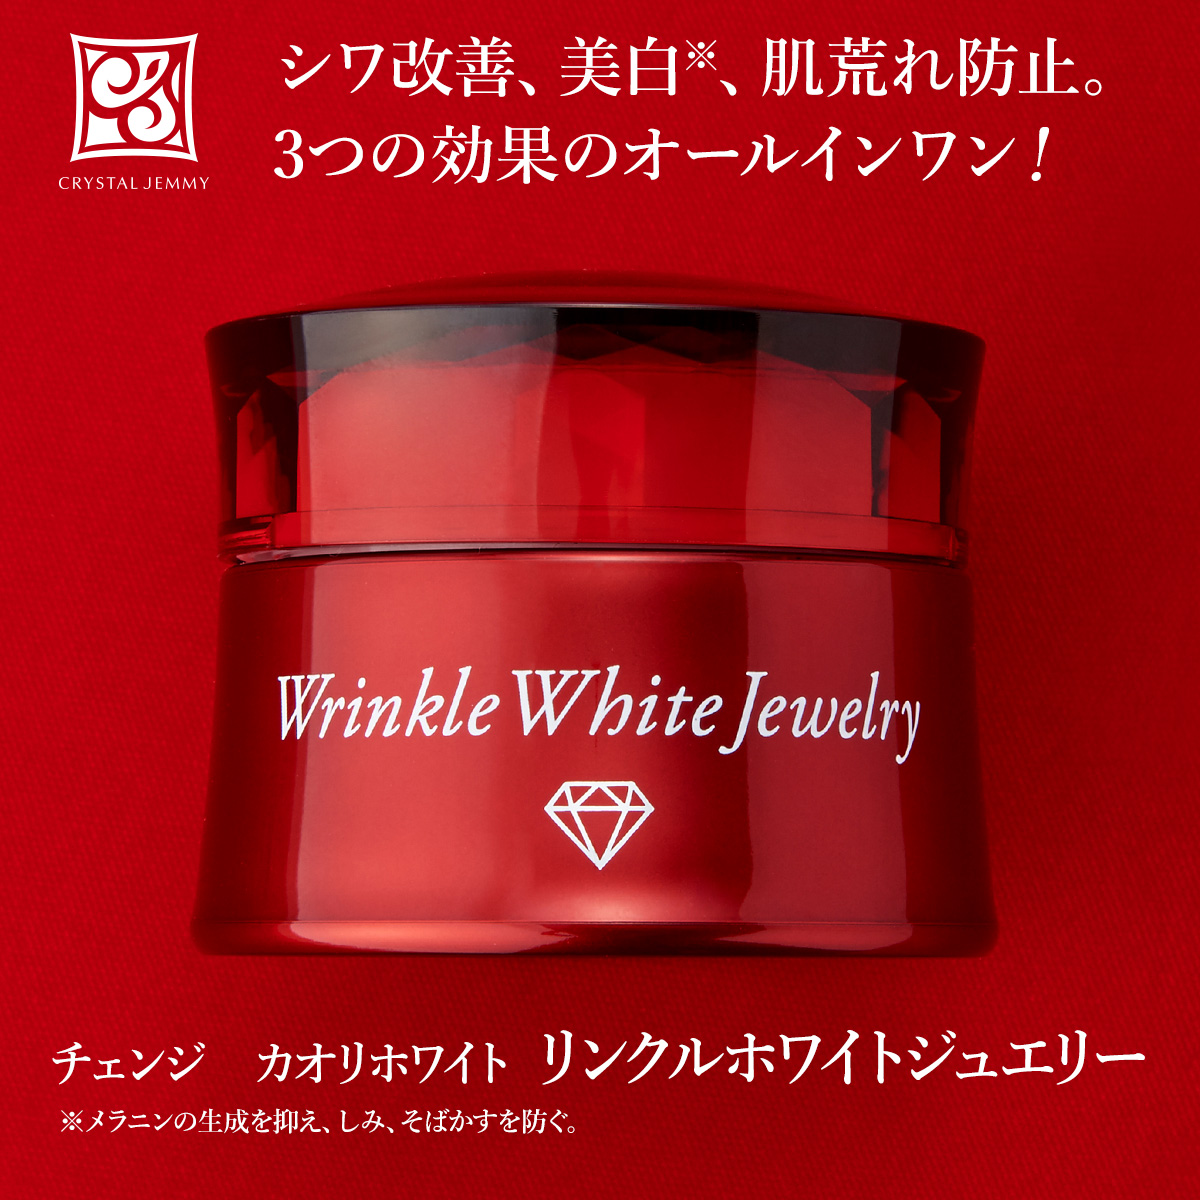 チェンジ カオリホワイト リンクルホワイトジュエリー - 基礎化粧品